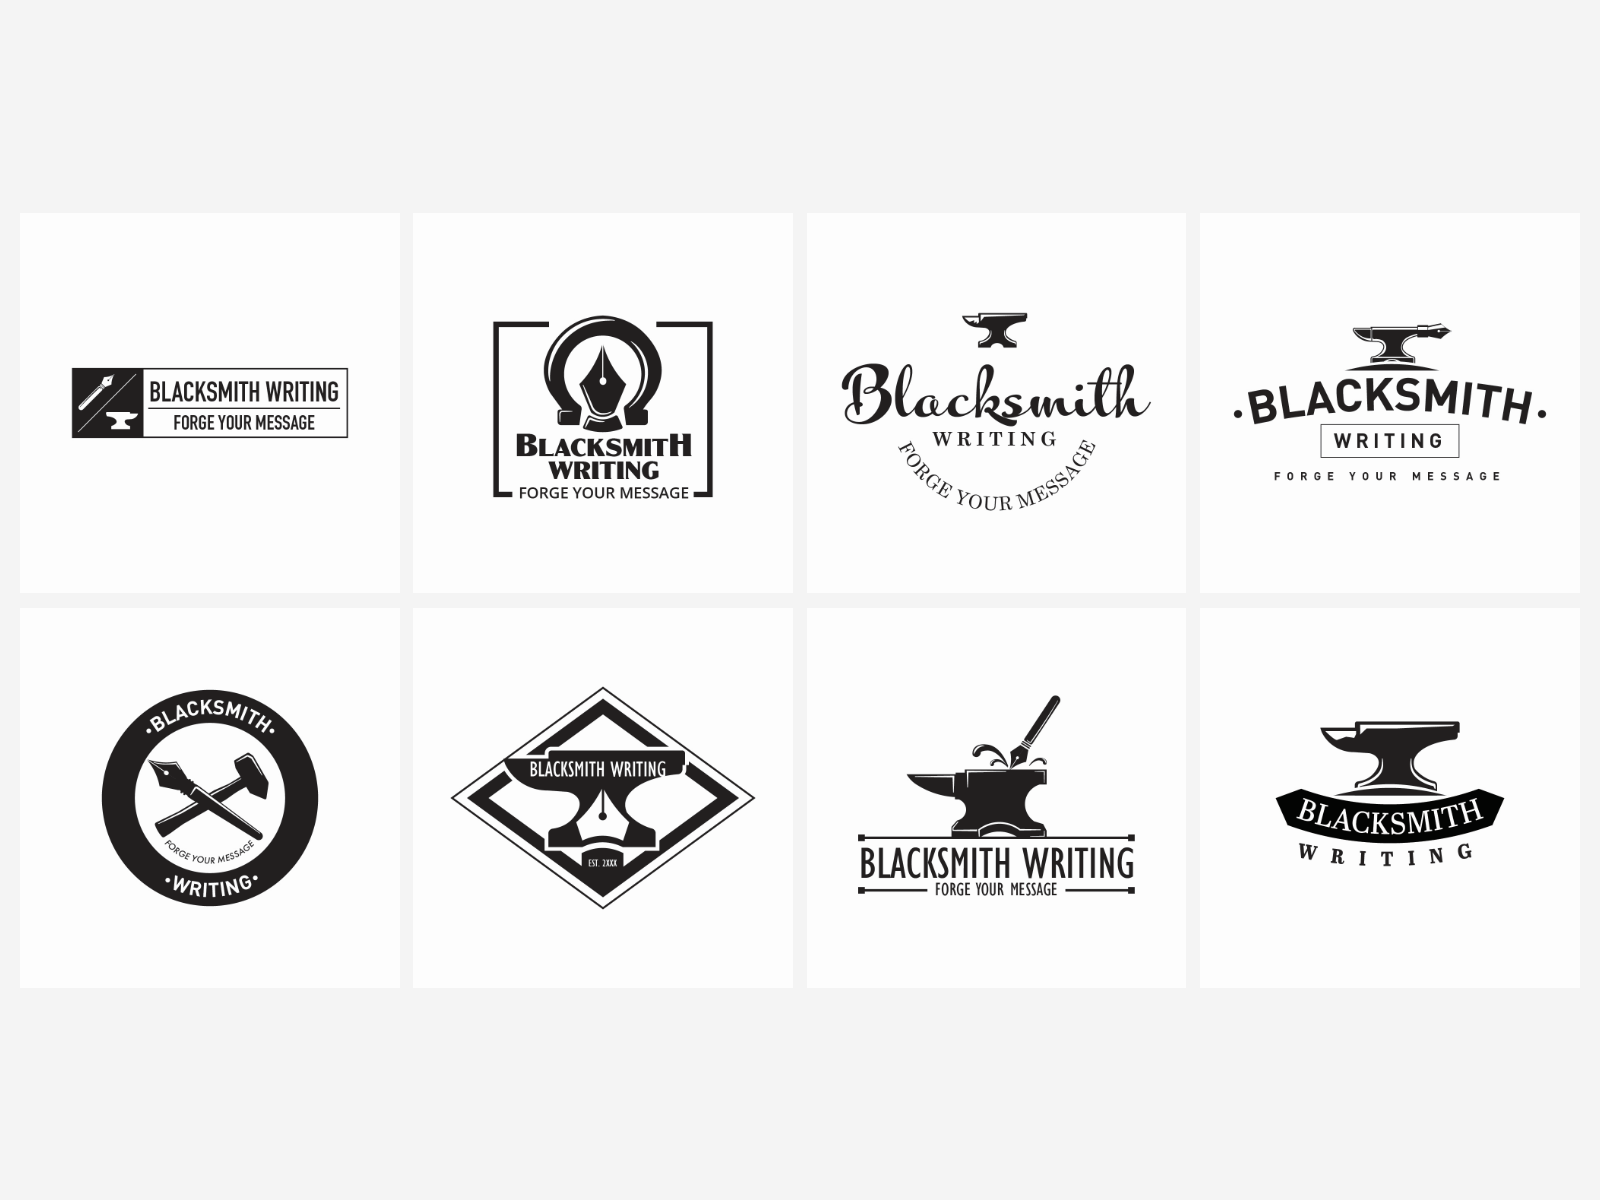 Blacksmith Craft Workshop Logo Or Emblem Artistic Forging Metal Work Symbol  Vector Illustration Stock Illustration - Download Image Now - iStock